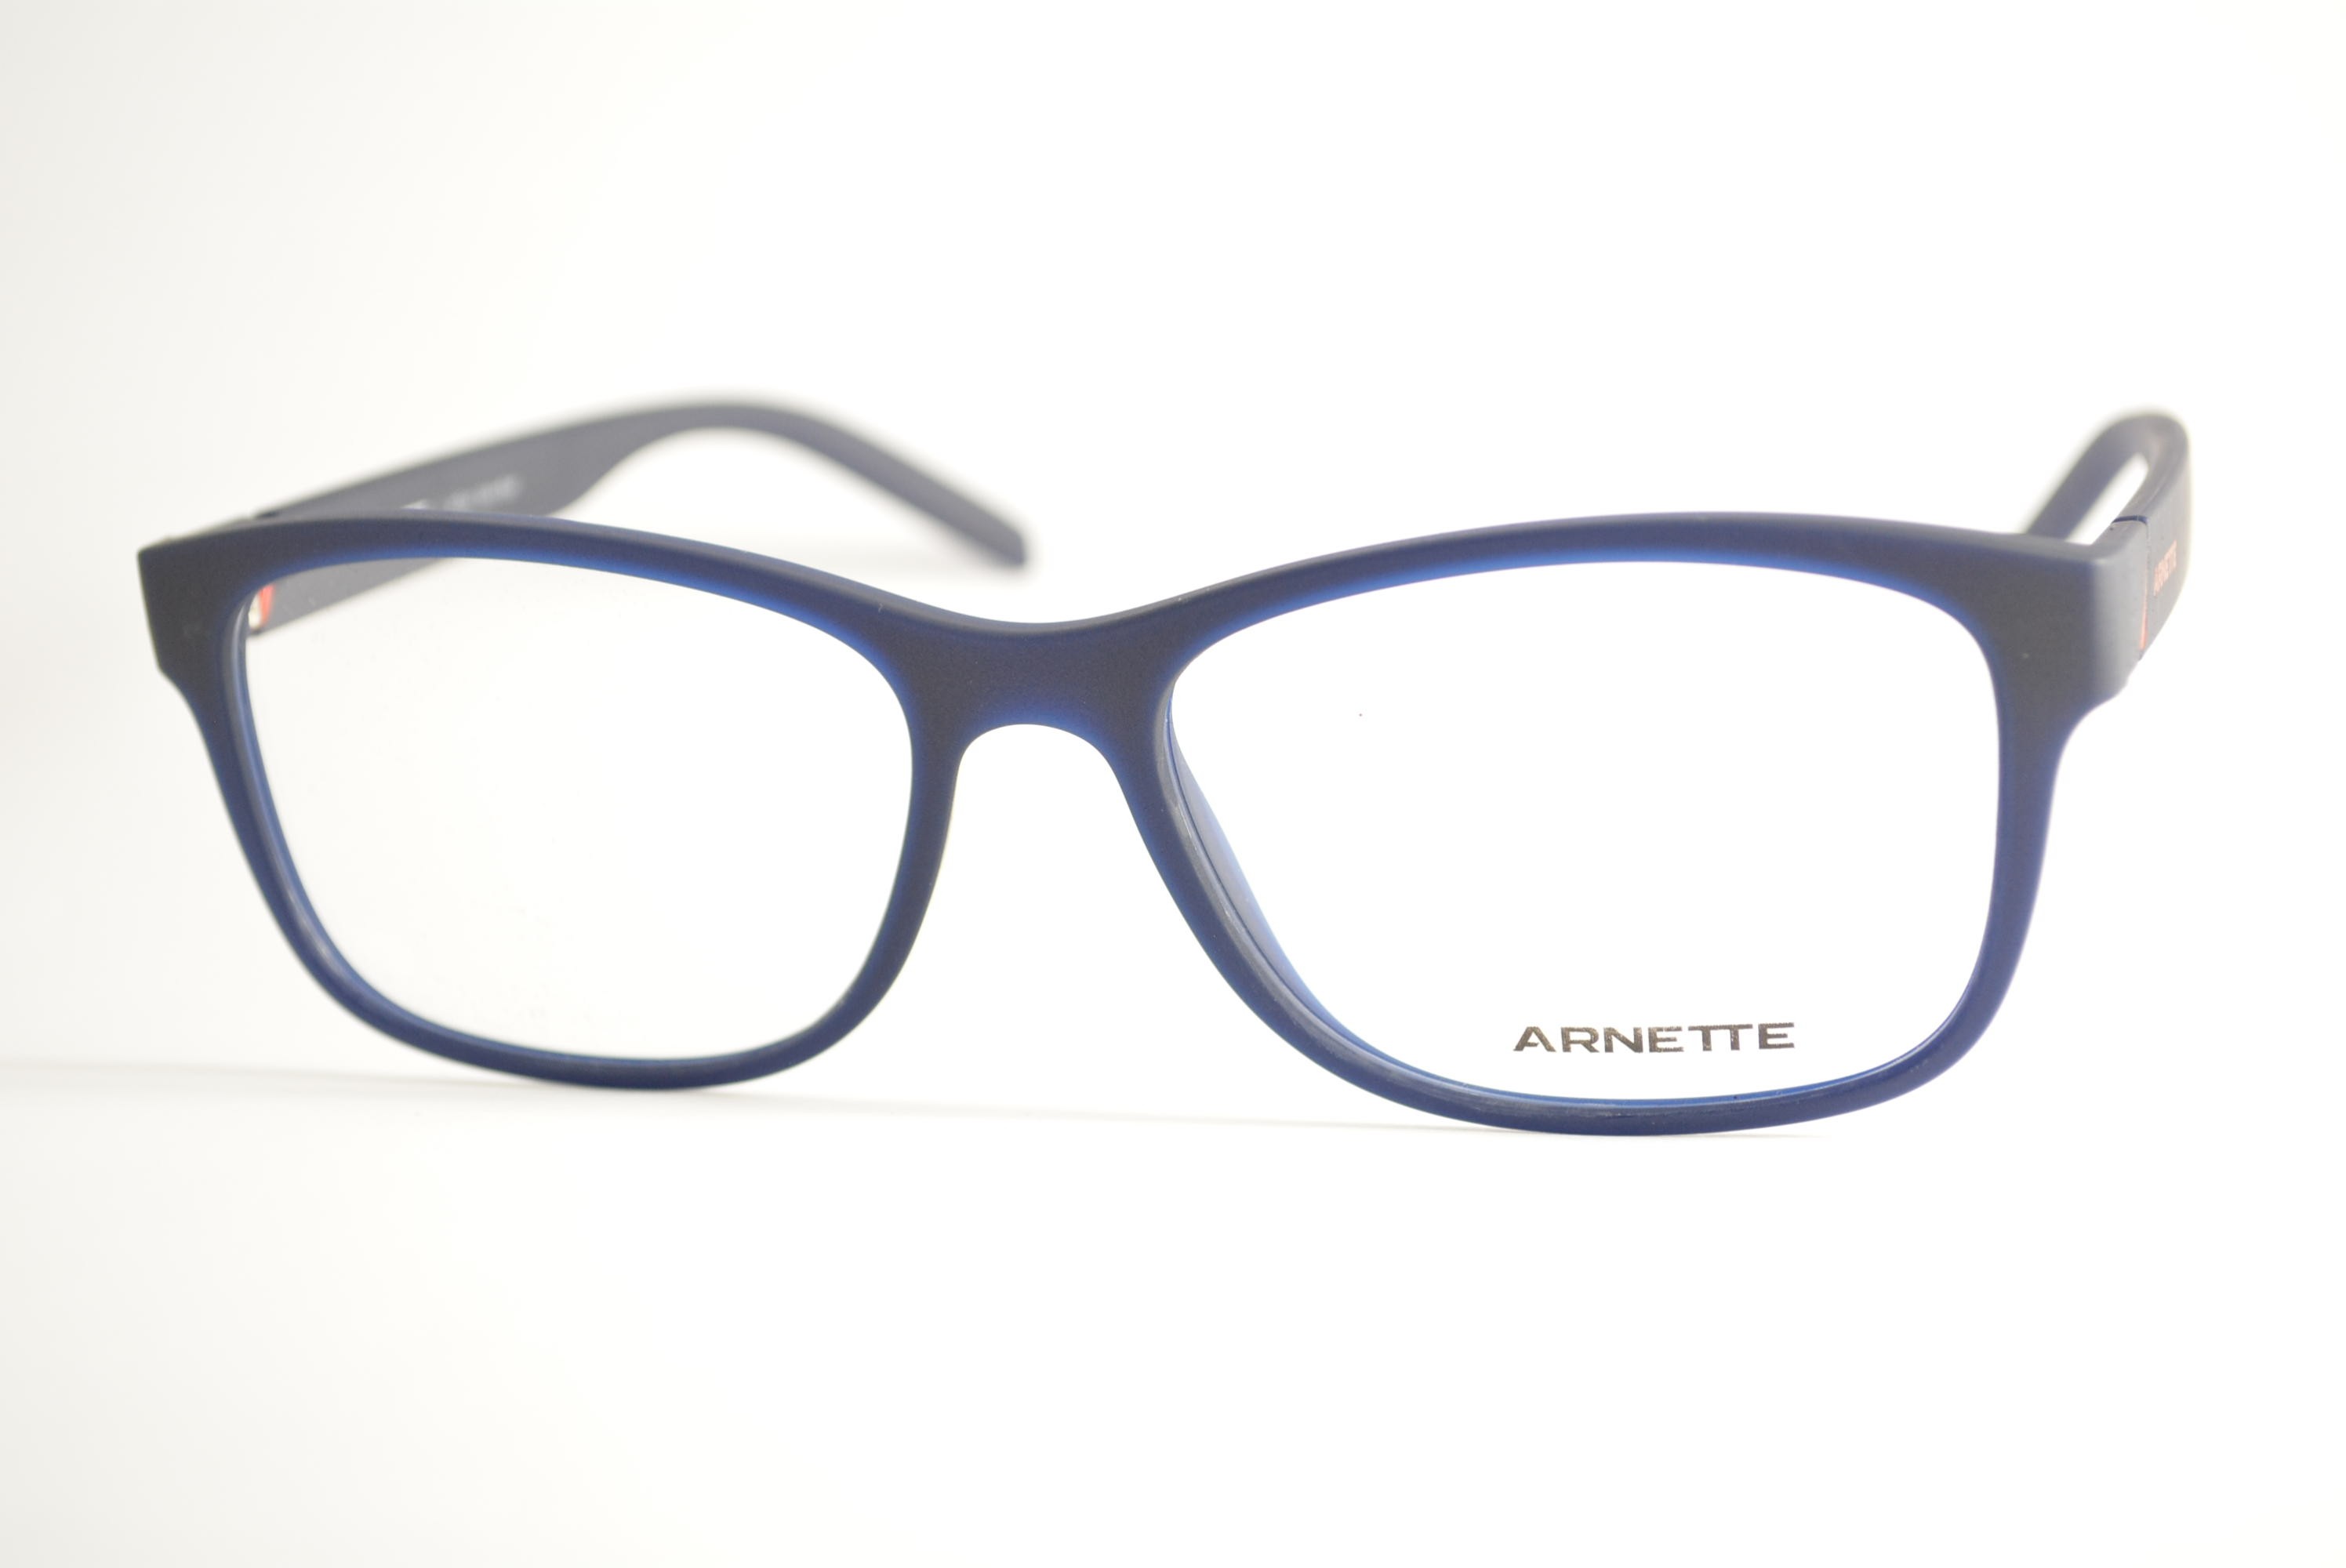 armação de óculos Arnette mod an7180L 2676